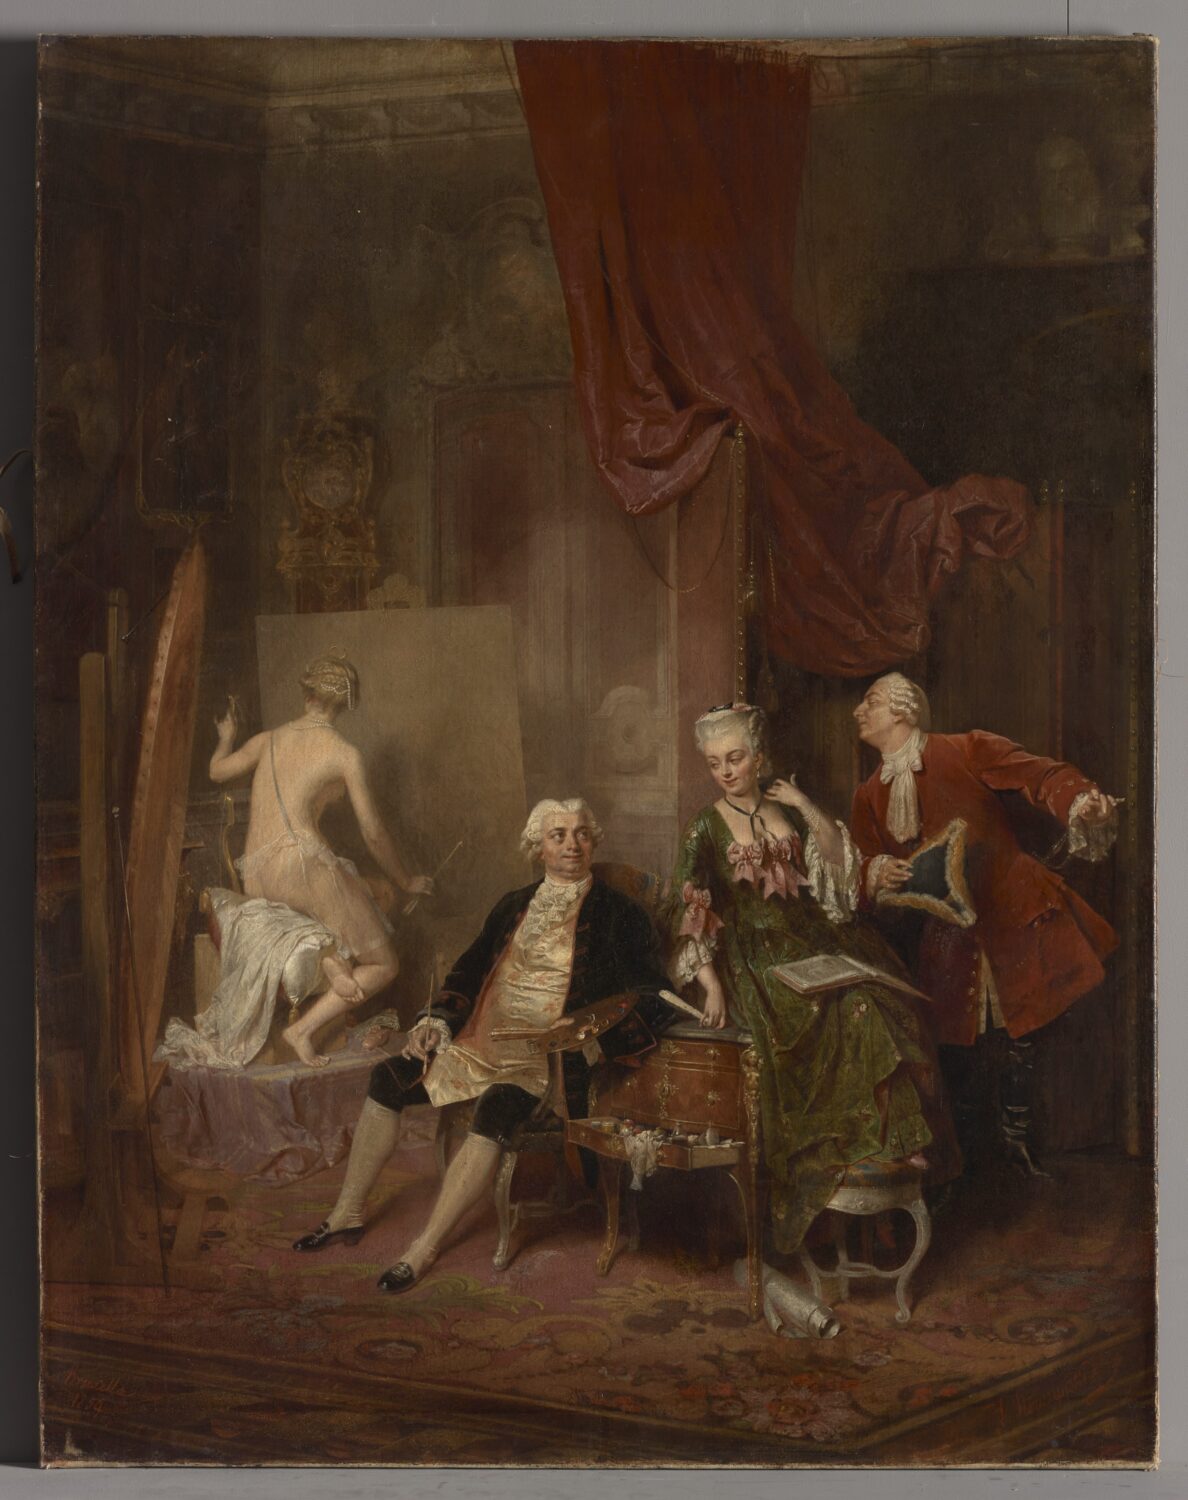 Obraz scena rodzajowa z XIX wieku. Dwóch mężczyzn i dwie kobiety w pomieszczeniu.